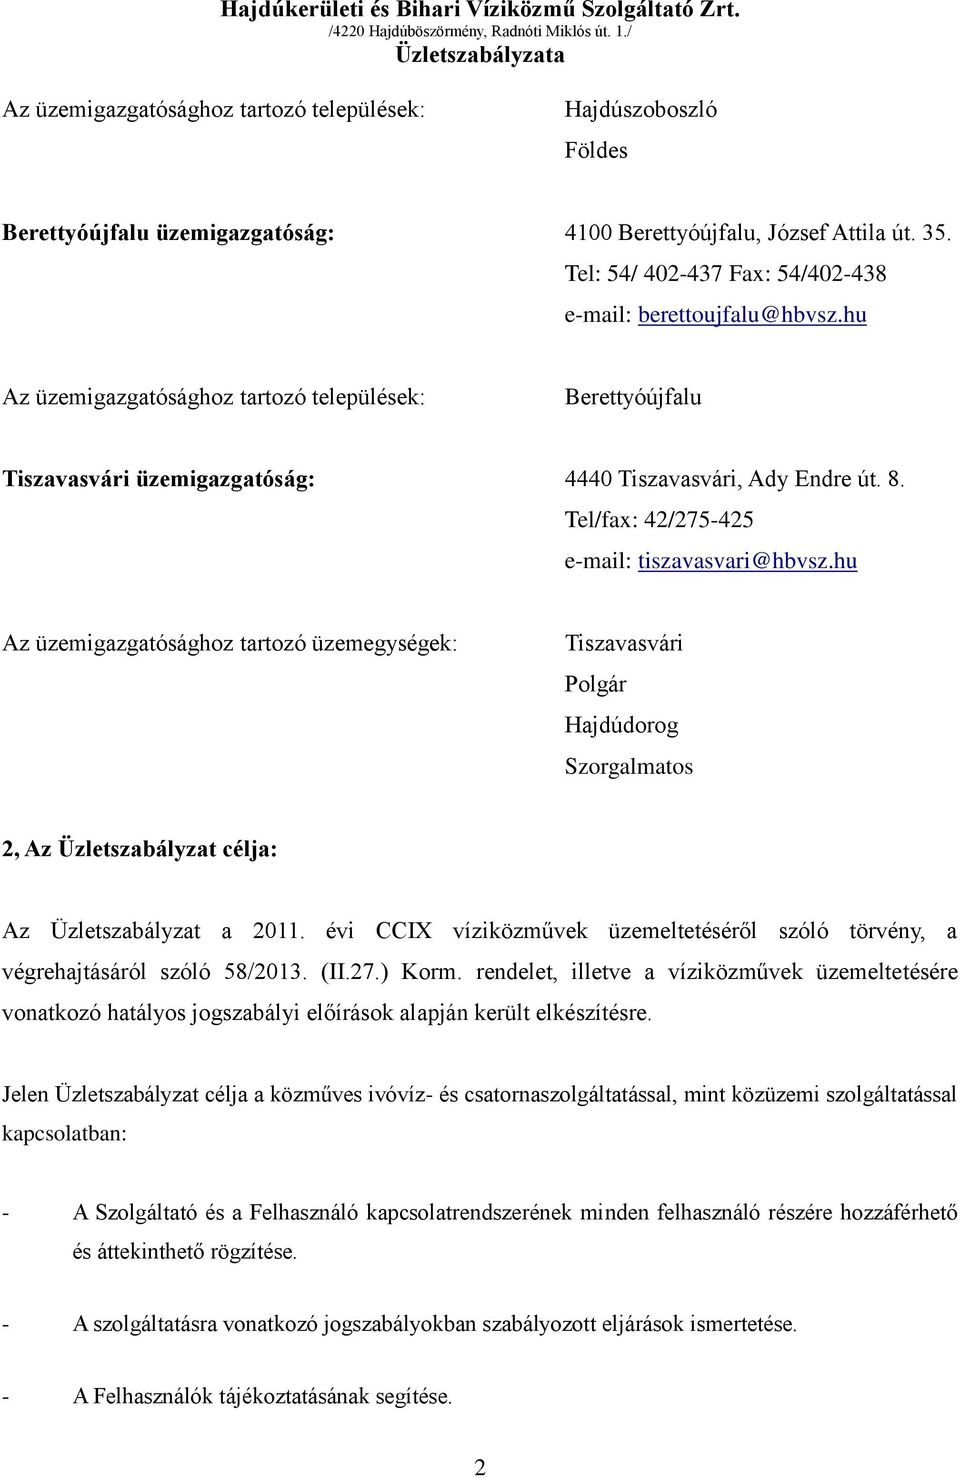 Tel/fax: 42/275-425 e-mail: tiszavasvari@hbvsz.hu Az üzemigazgatósághoz tartozó üzemegységek: Tiszavasvári Polgár Hajdúdorog Szorgalmatos 2, Az Üzletszabályzat célja: Az Üzletszabályzat a 2011.